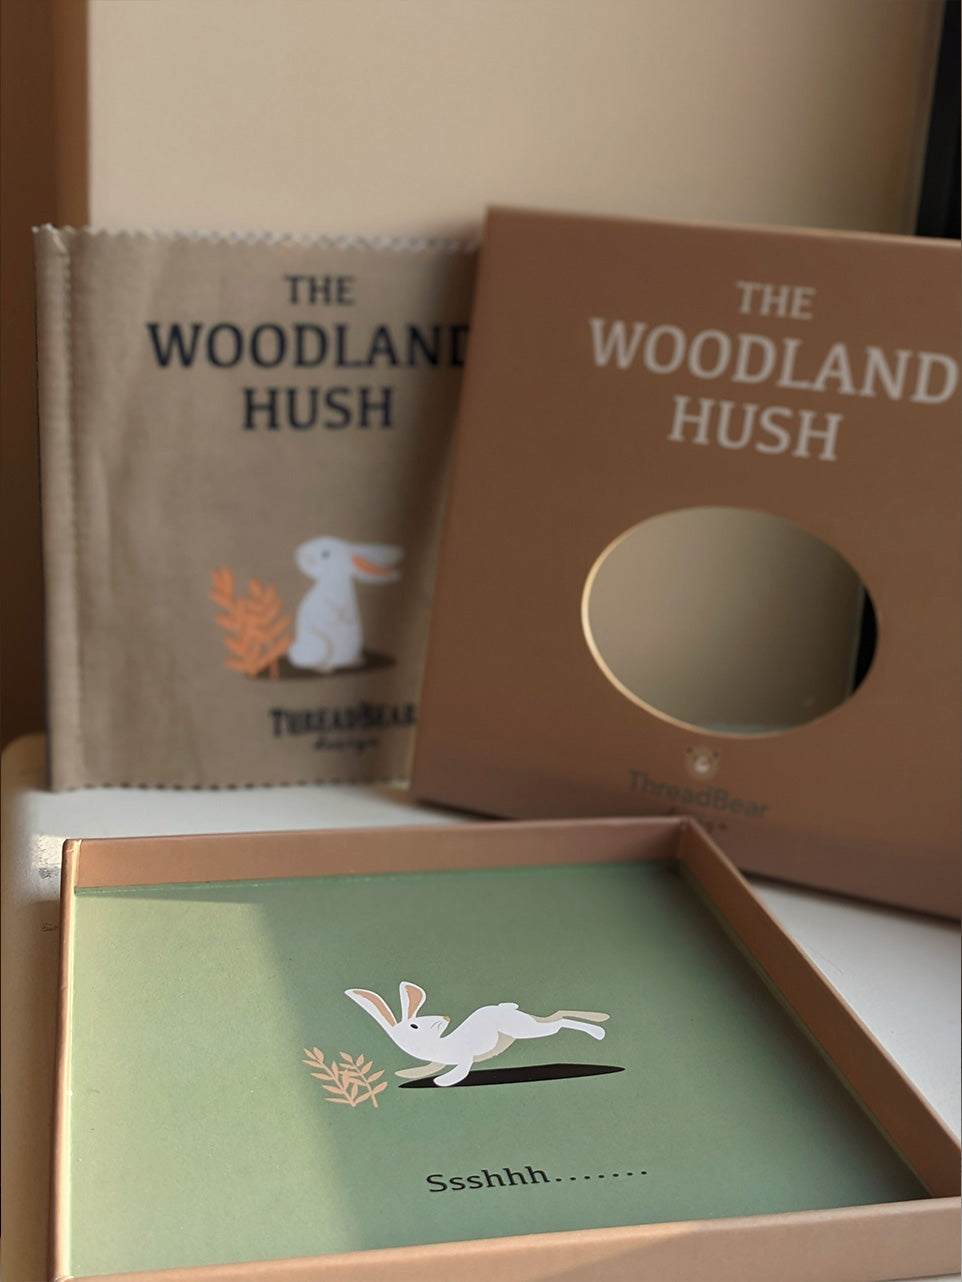 The Woodland Hush Rag Book